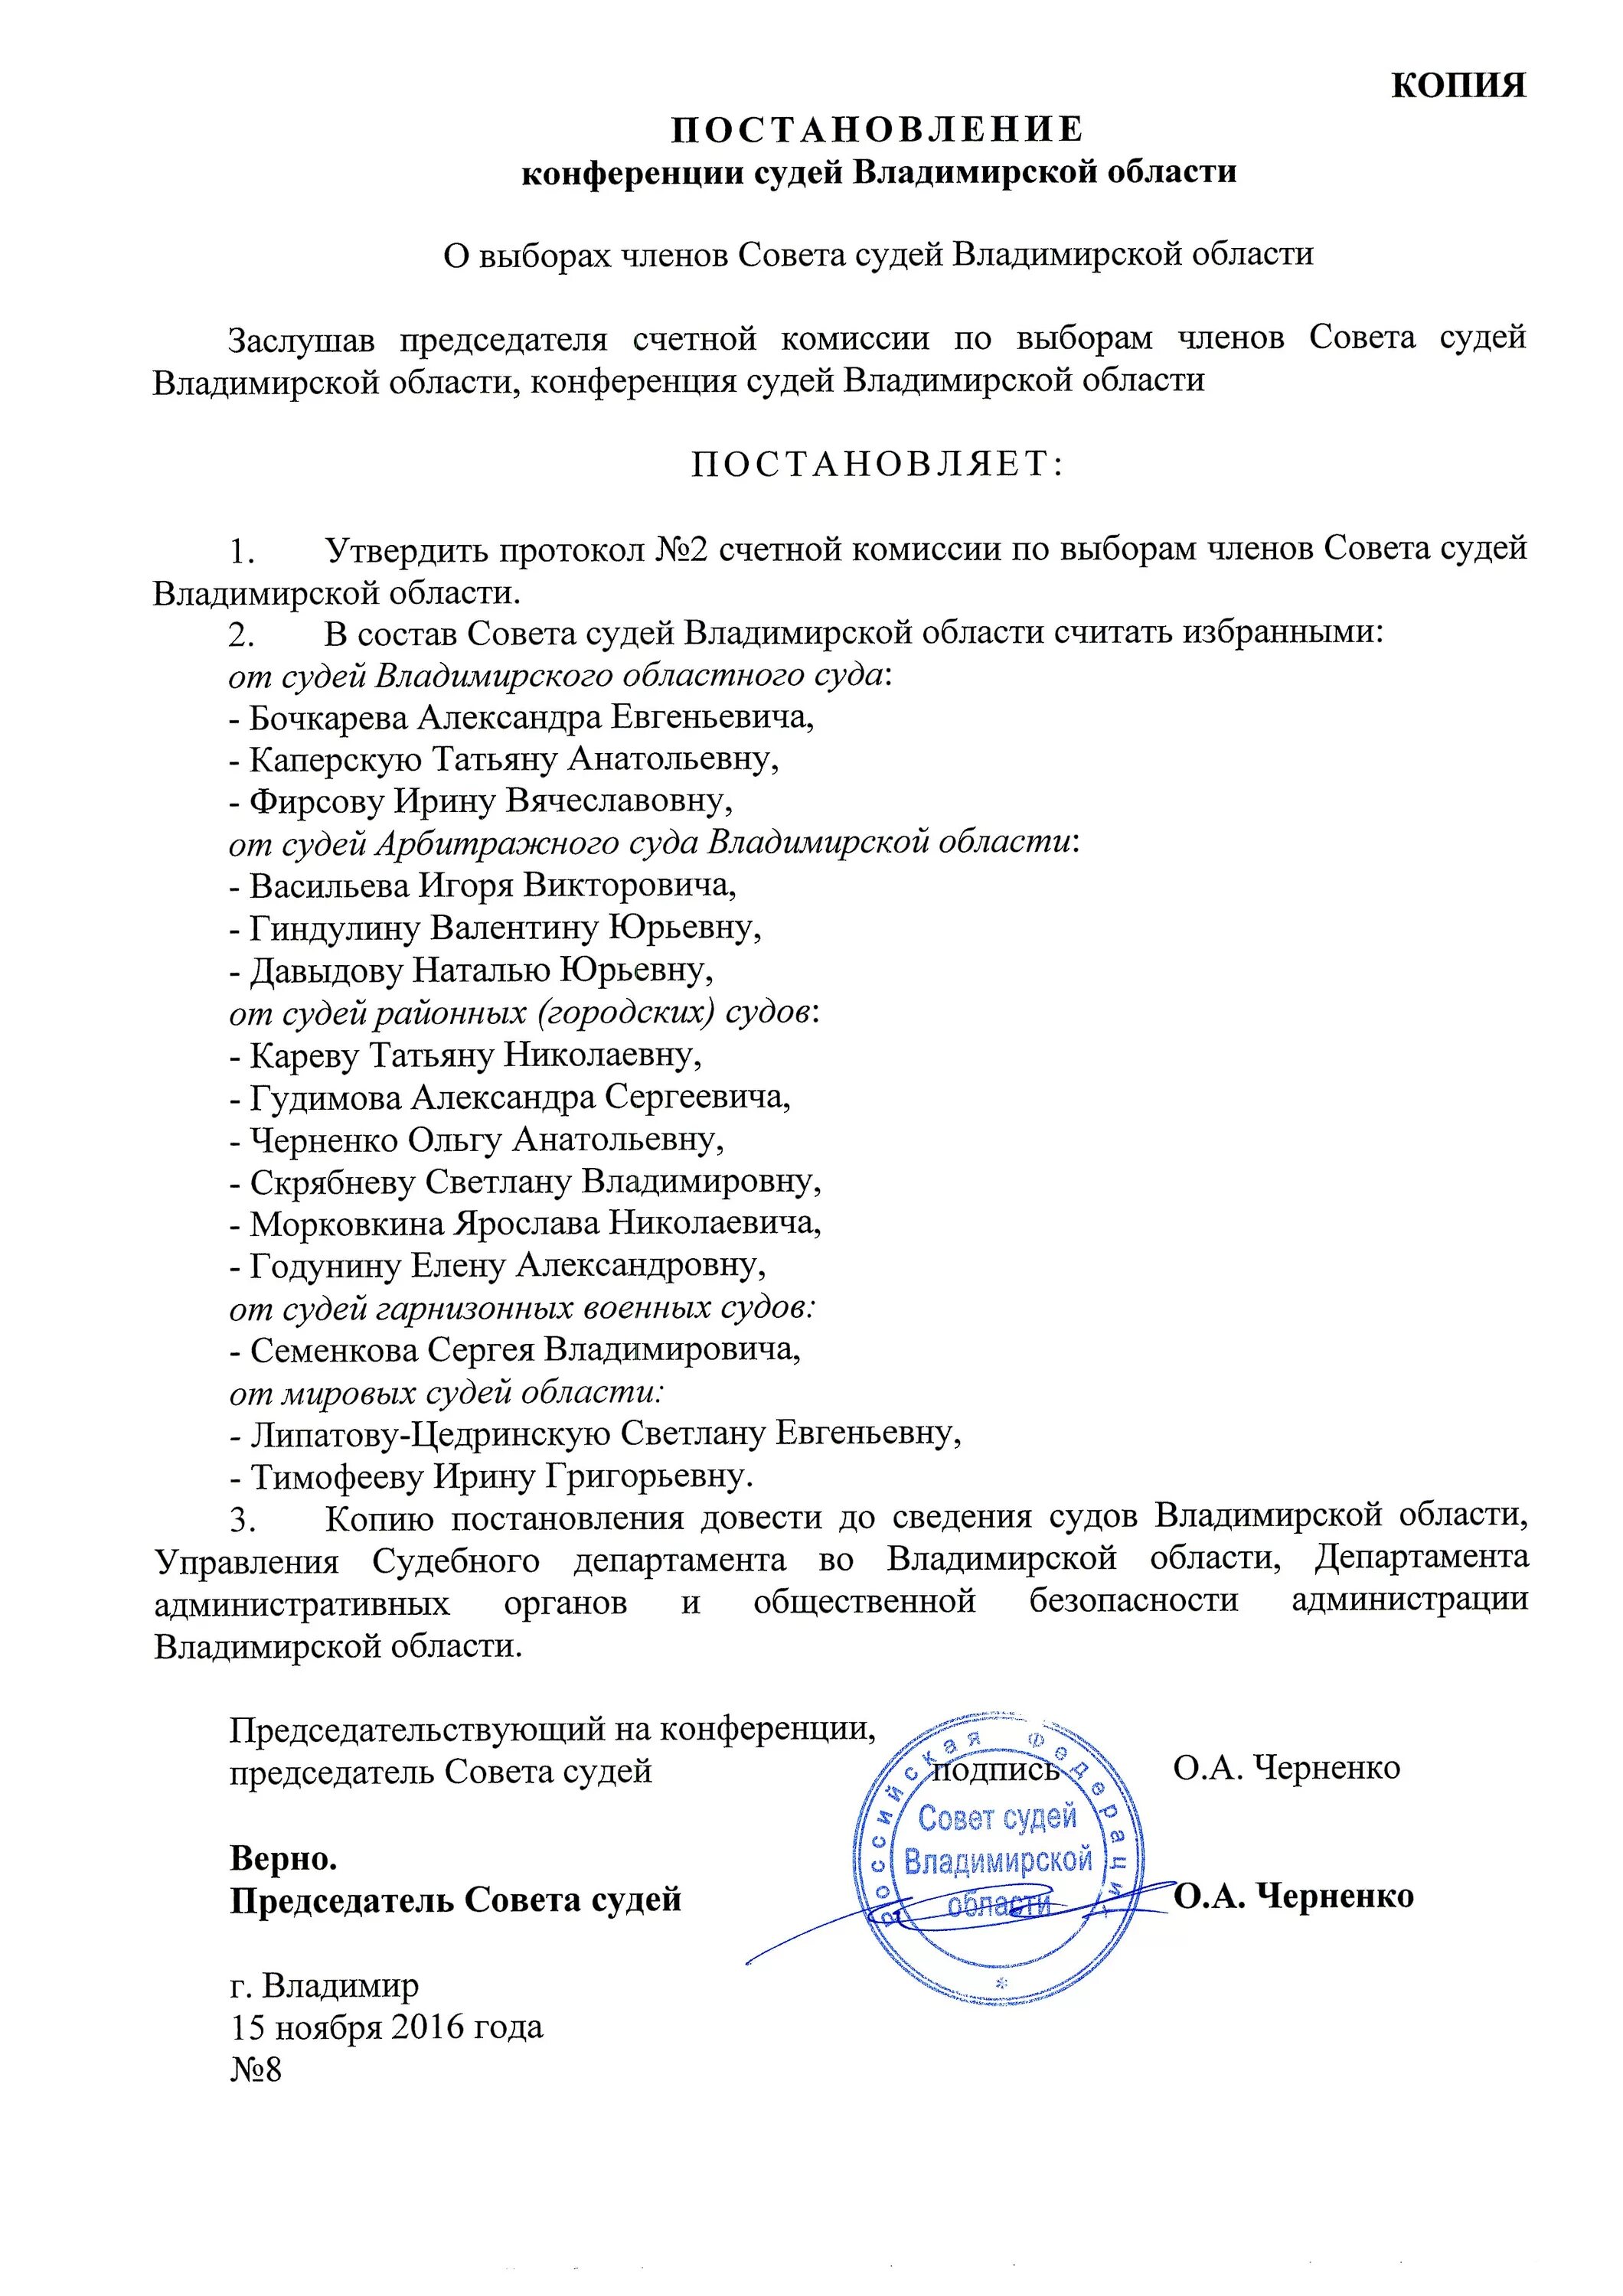 Постановления совета судей рф. Сайт совета судей постановление совета судей РФ 579 от 26 июля.